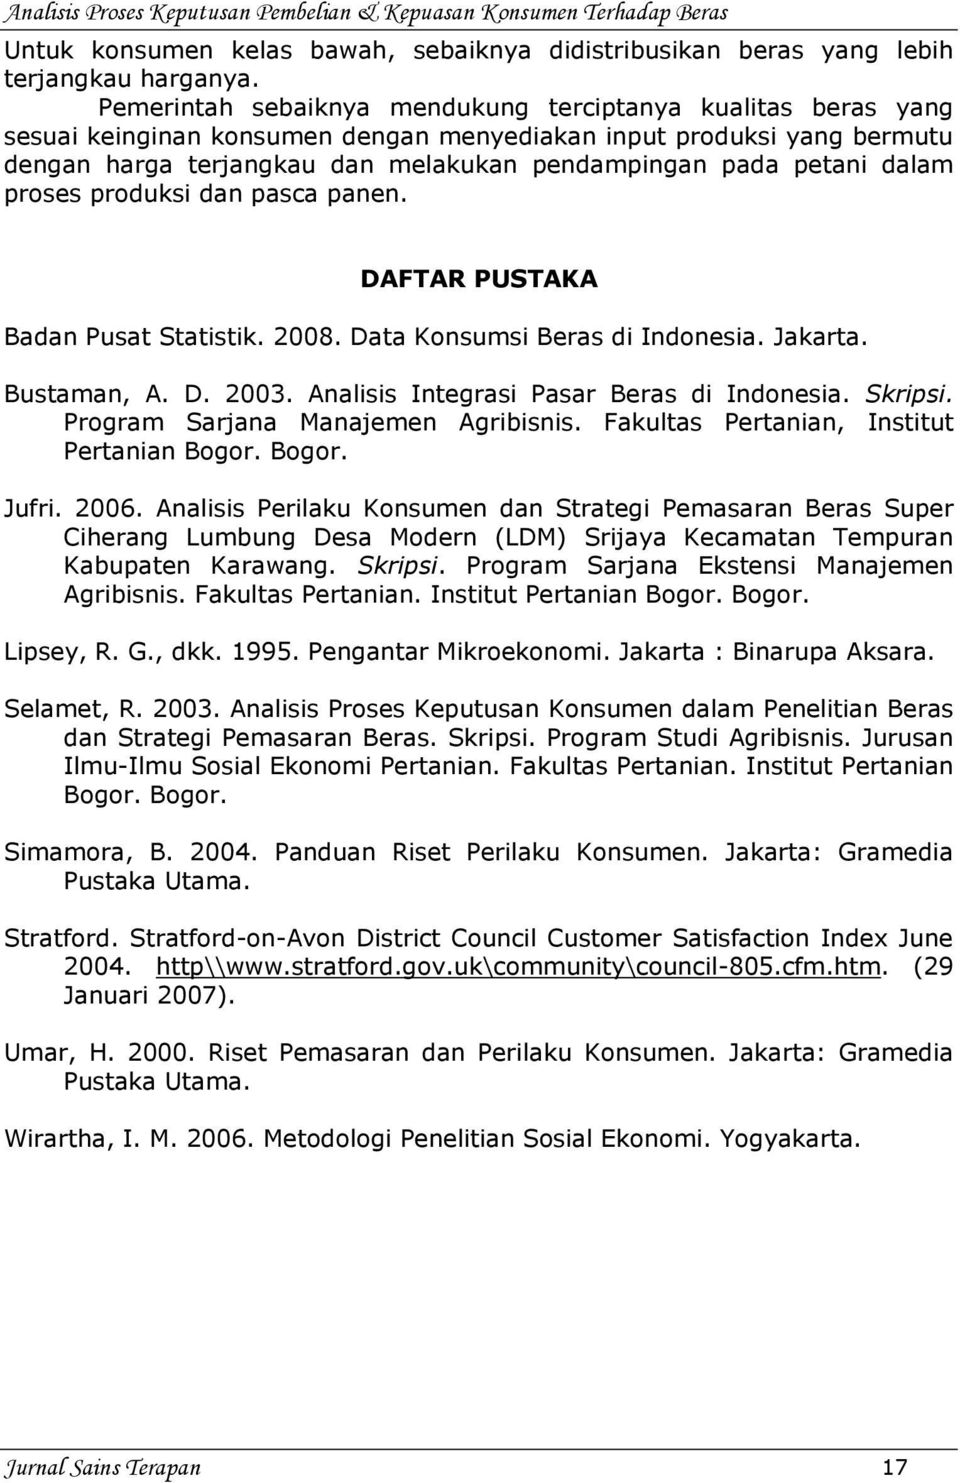 dalam proses produksi dan pasca panen. DAFTAR PUSTAKA Badan Pusat Statistik. 2008. Data Konsumsi Beras di Indonesia. Jakarta. Bustaman, A. D. 2003. Analisis Integrasi Pasar Beras di Indonesia.